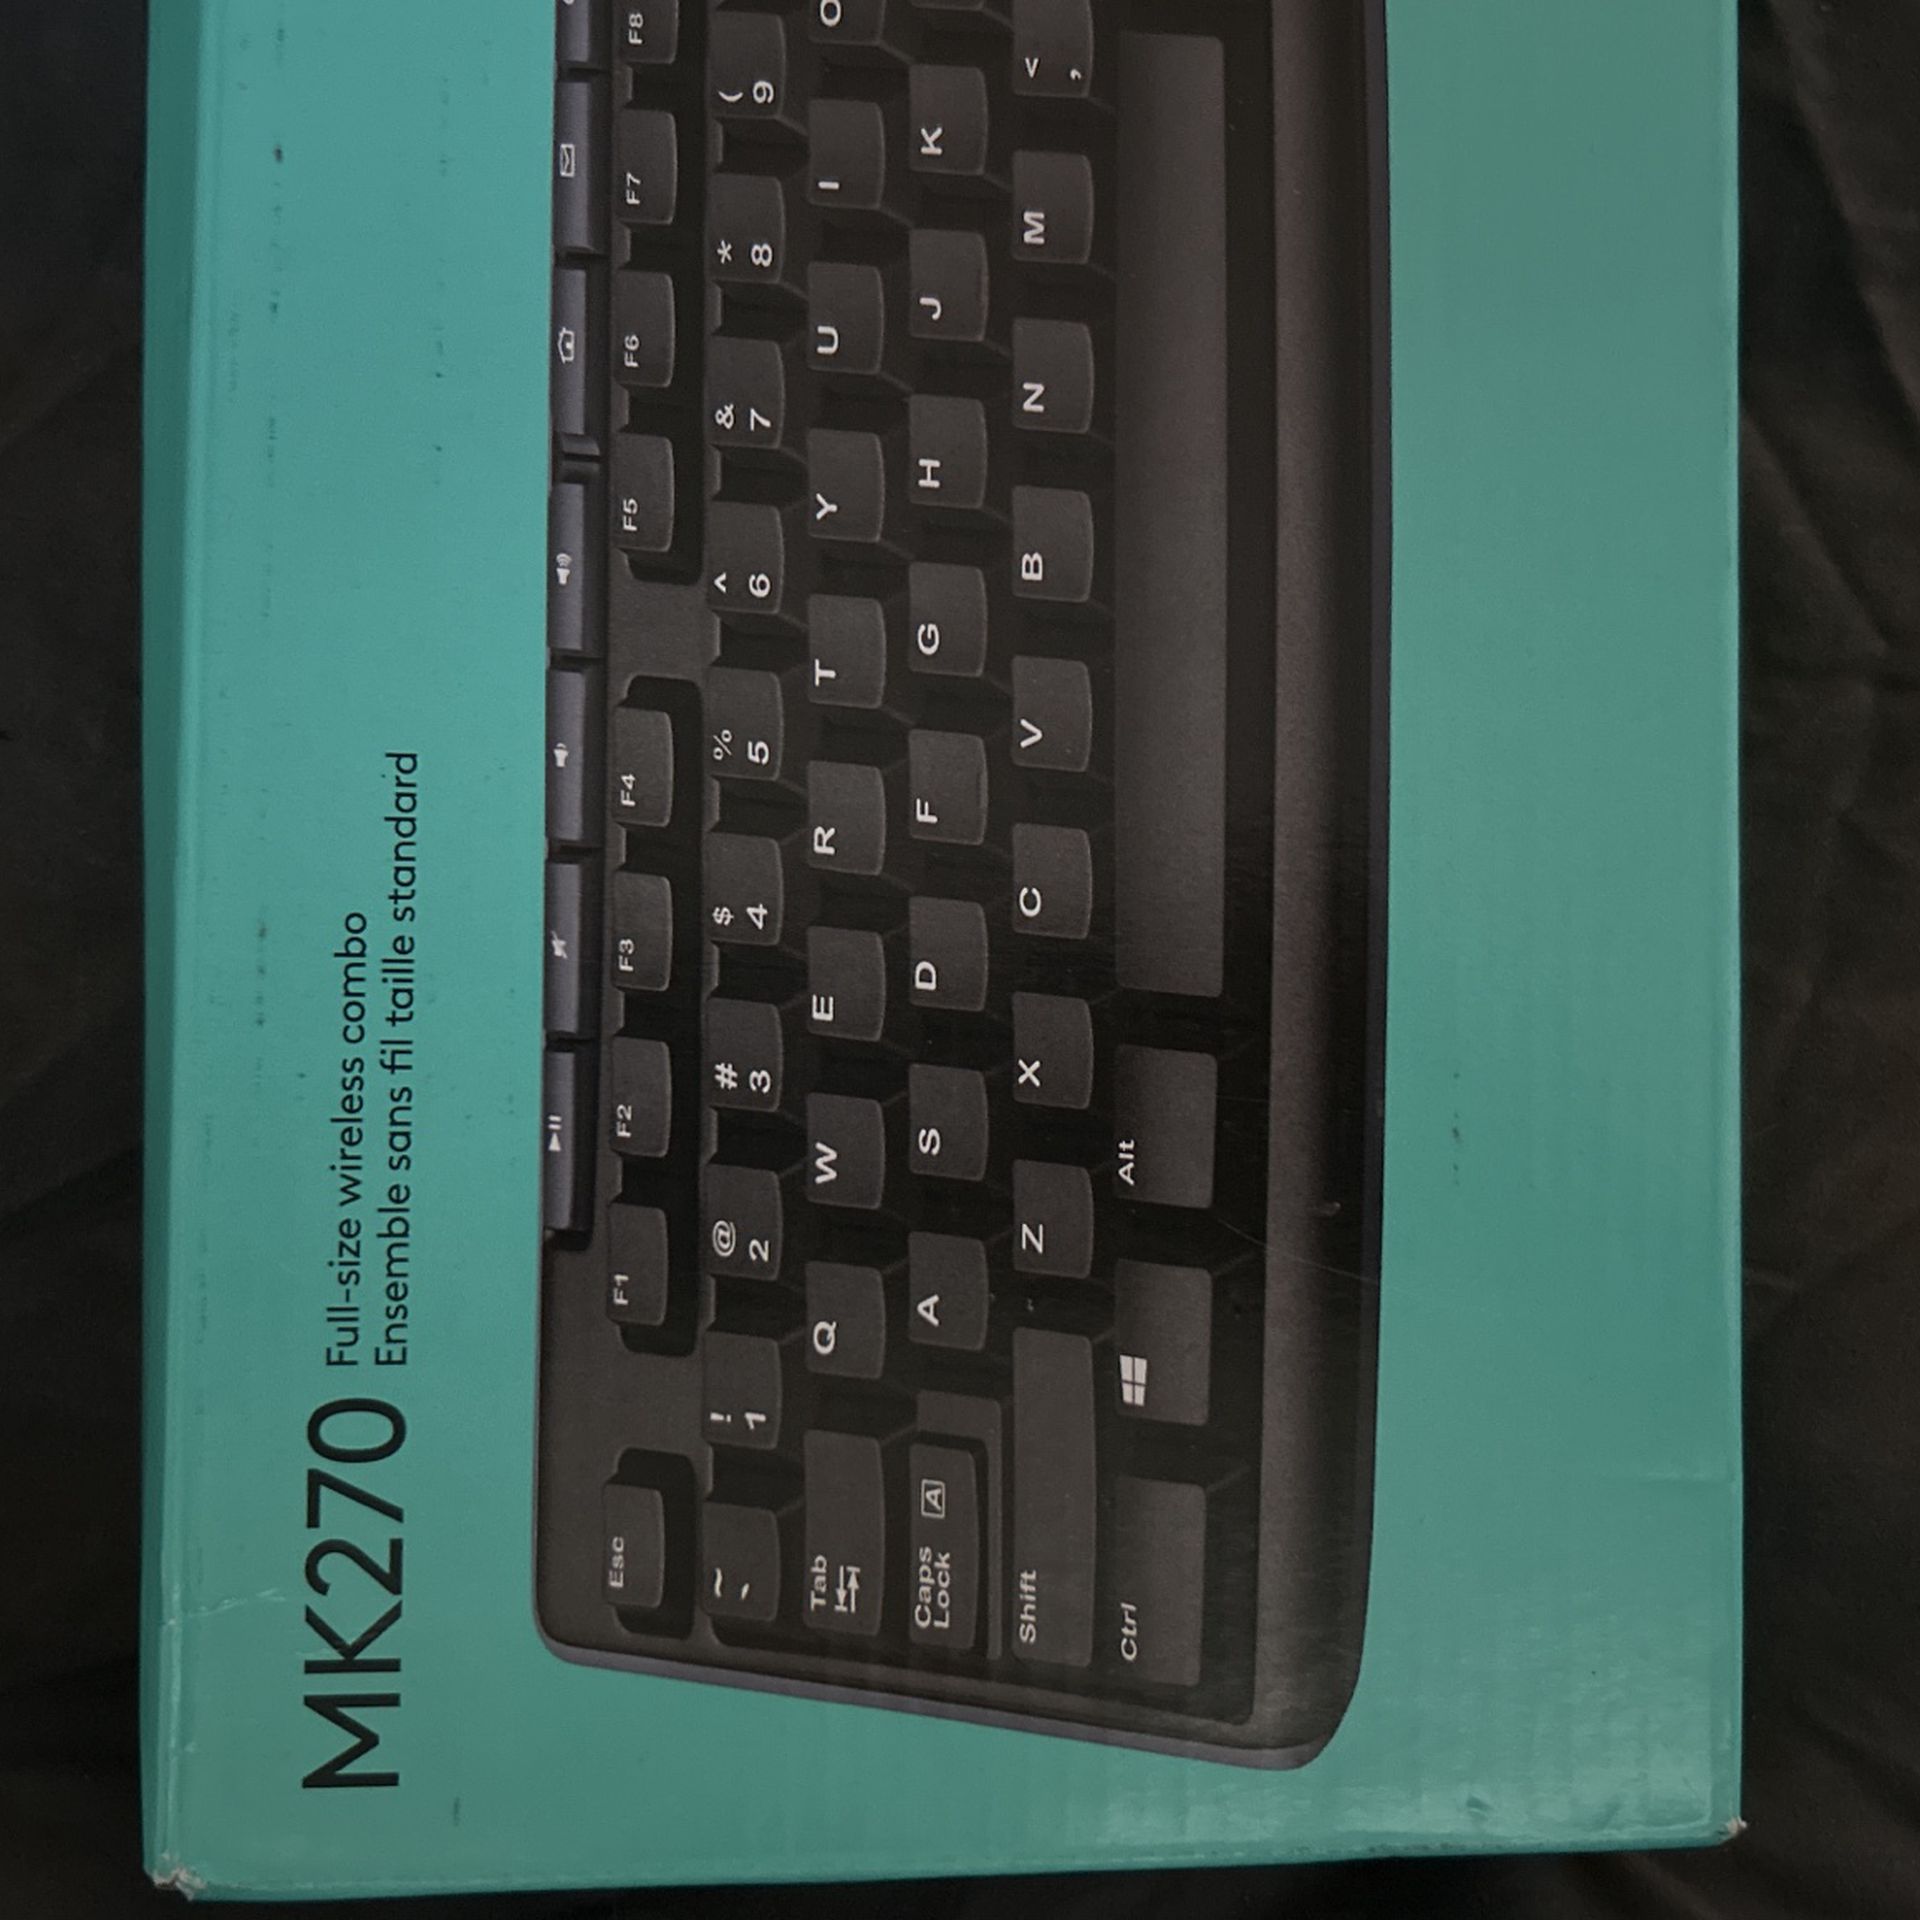 Logitech MK270 Wireless Keyboard And Mouse 